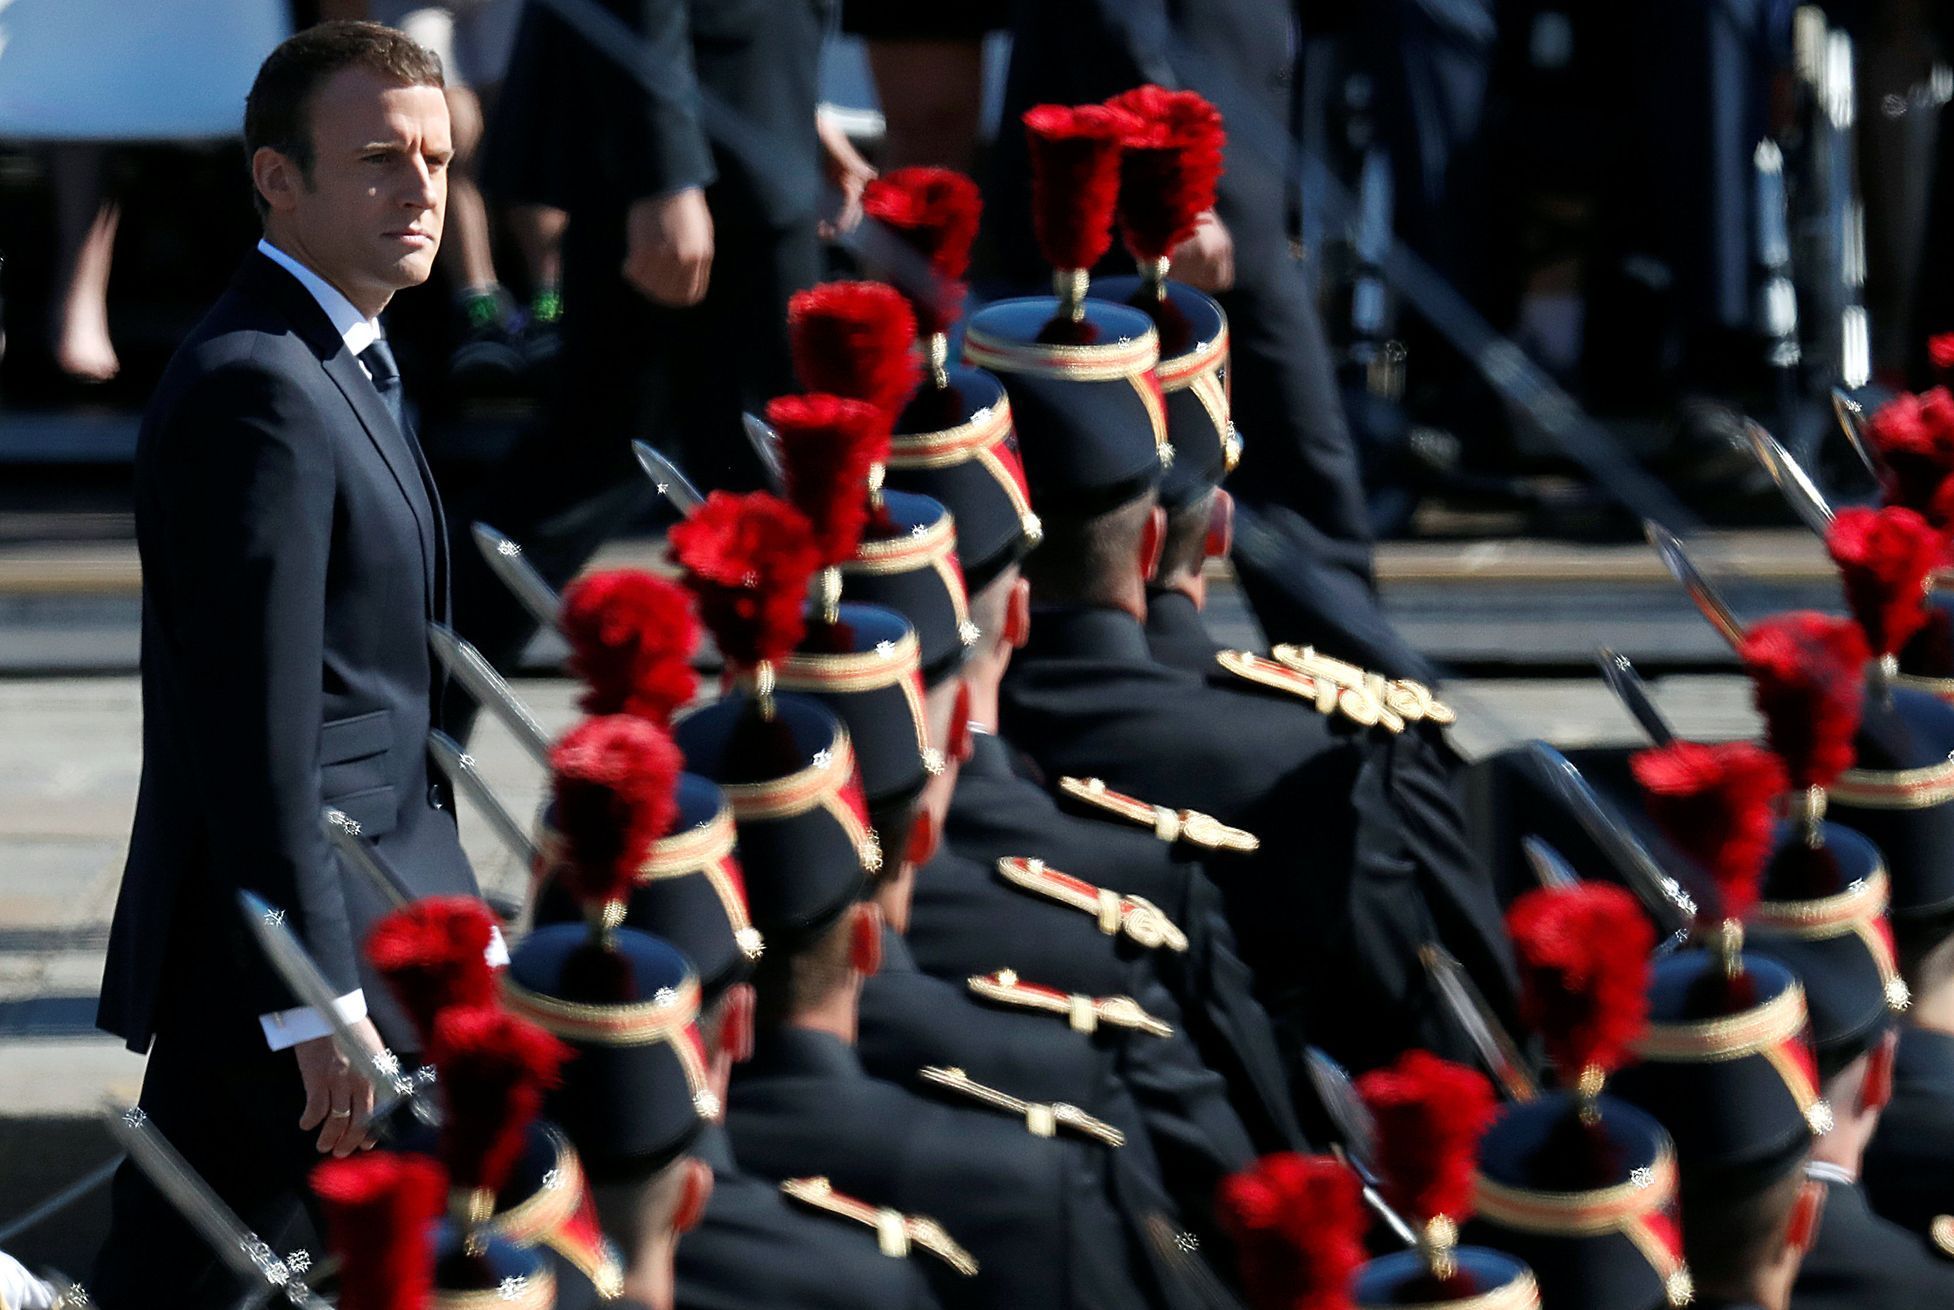 Vojenská přehlídka v Paříži, oslavy Dne Bastilly